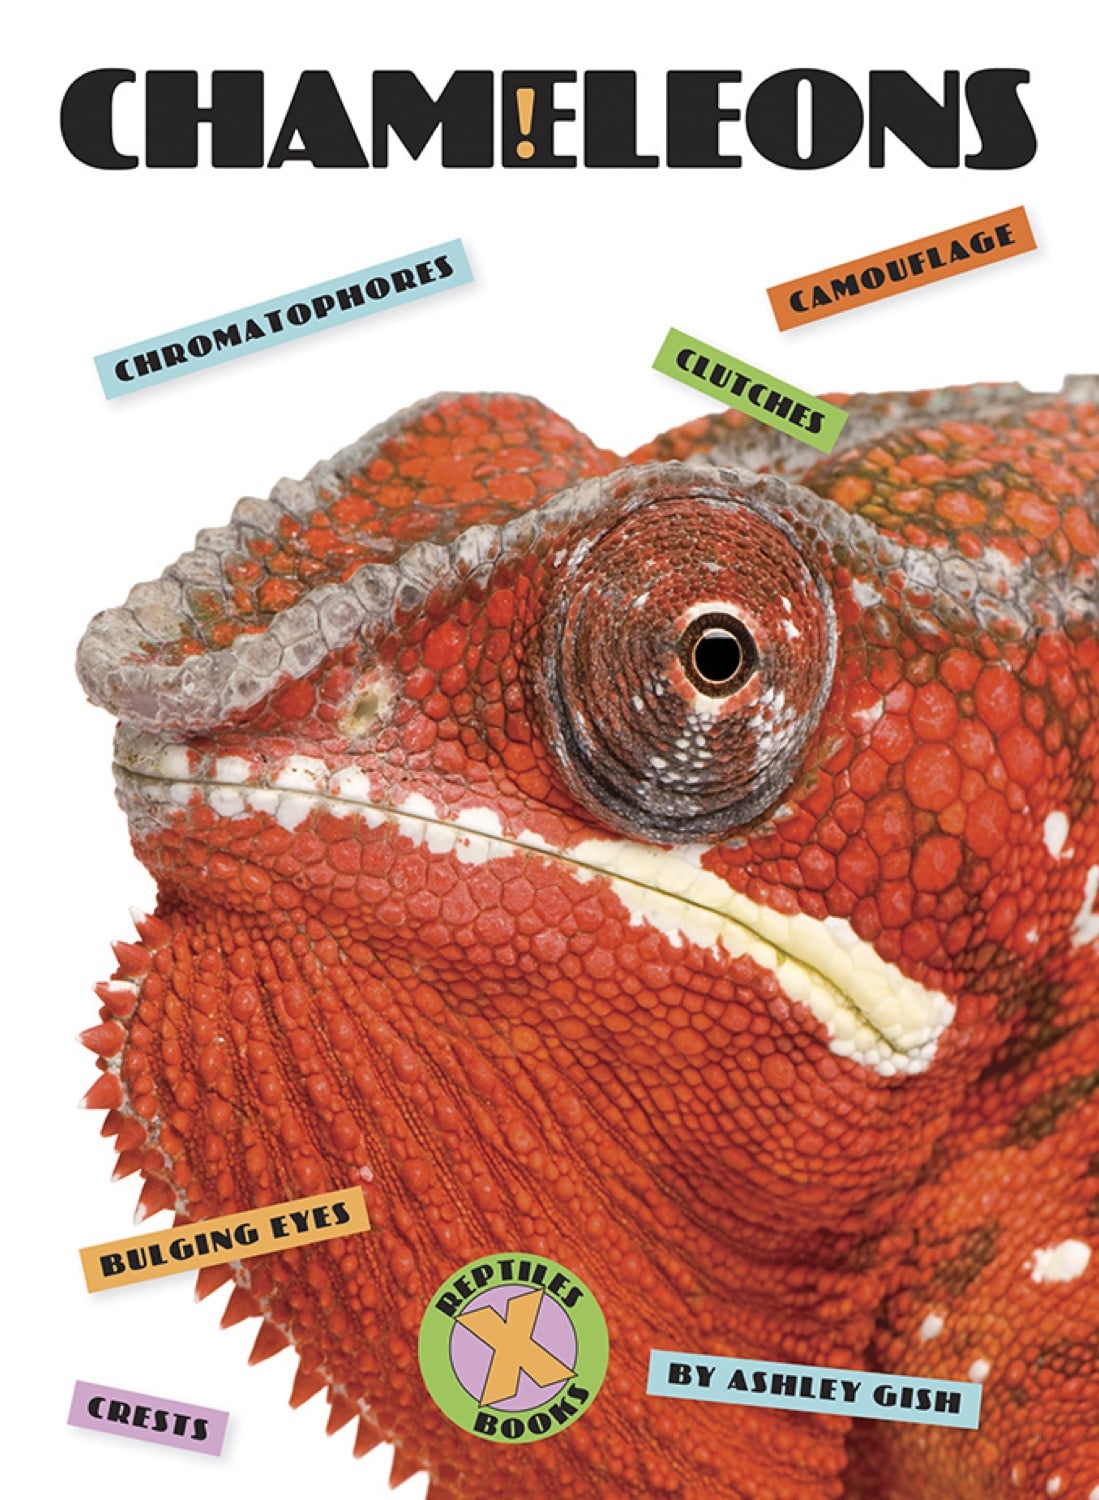 X-Books: Reptiles: Chameleons